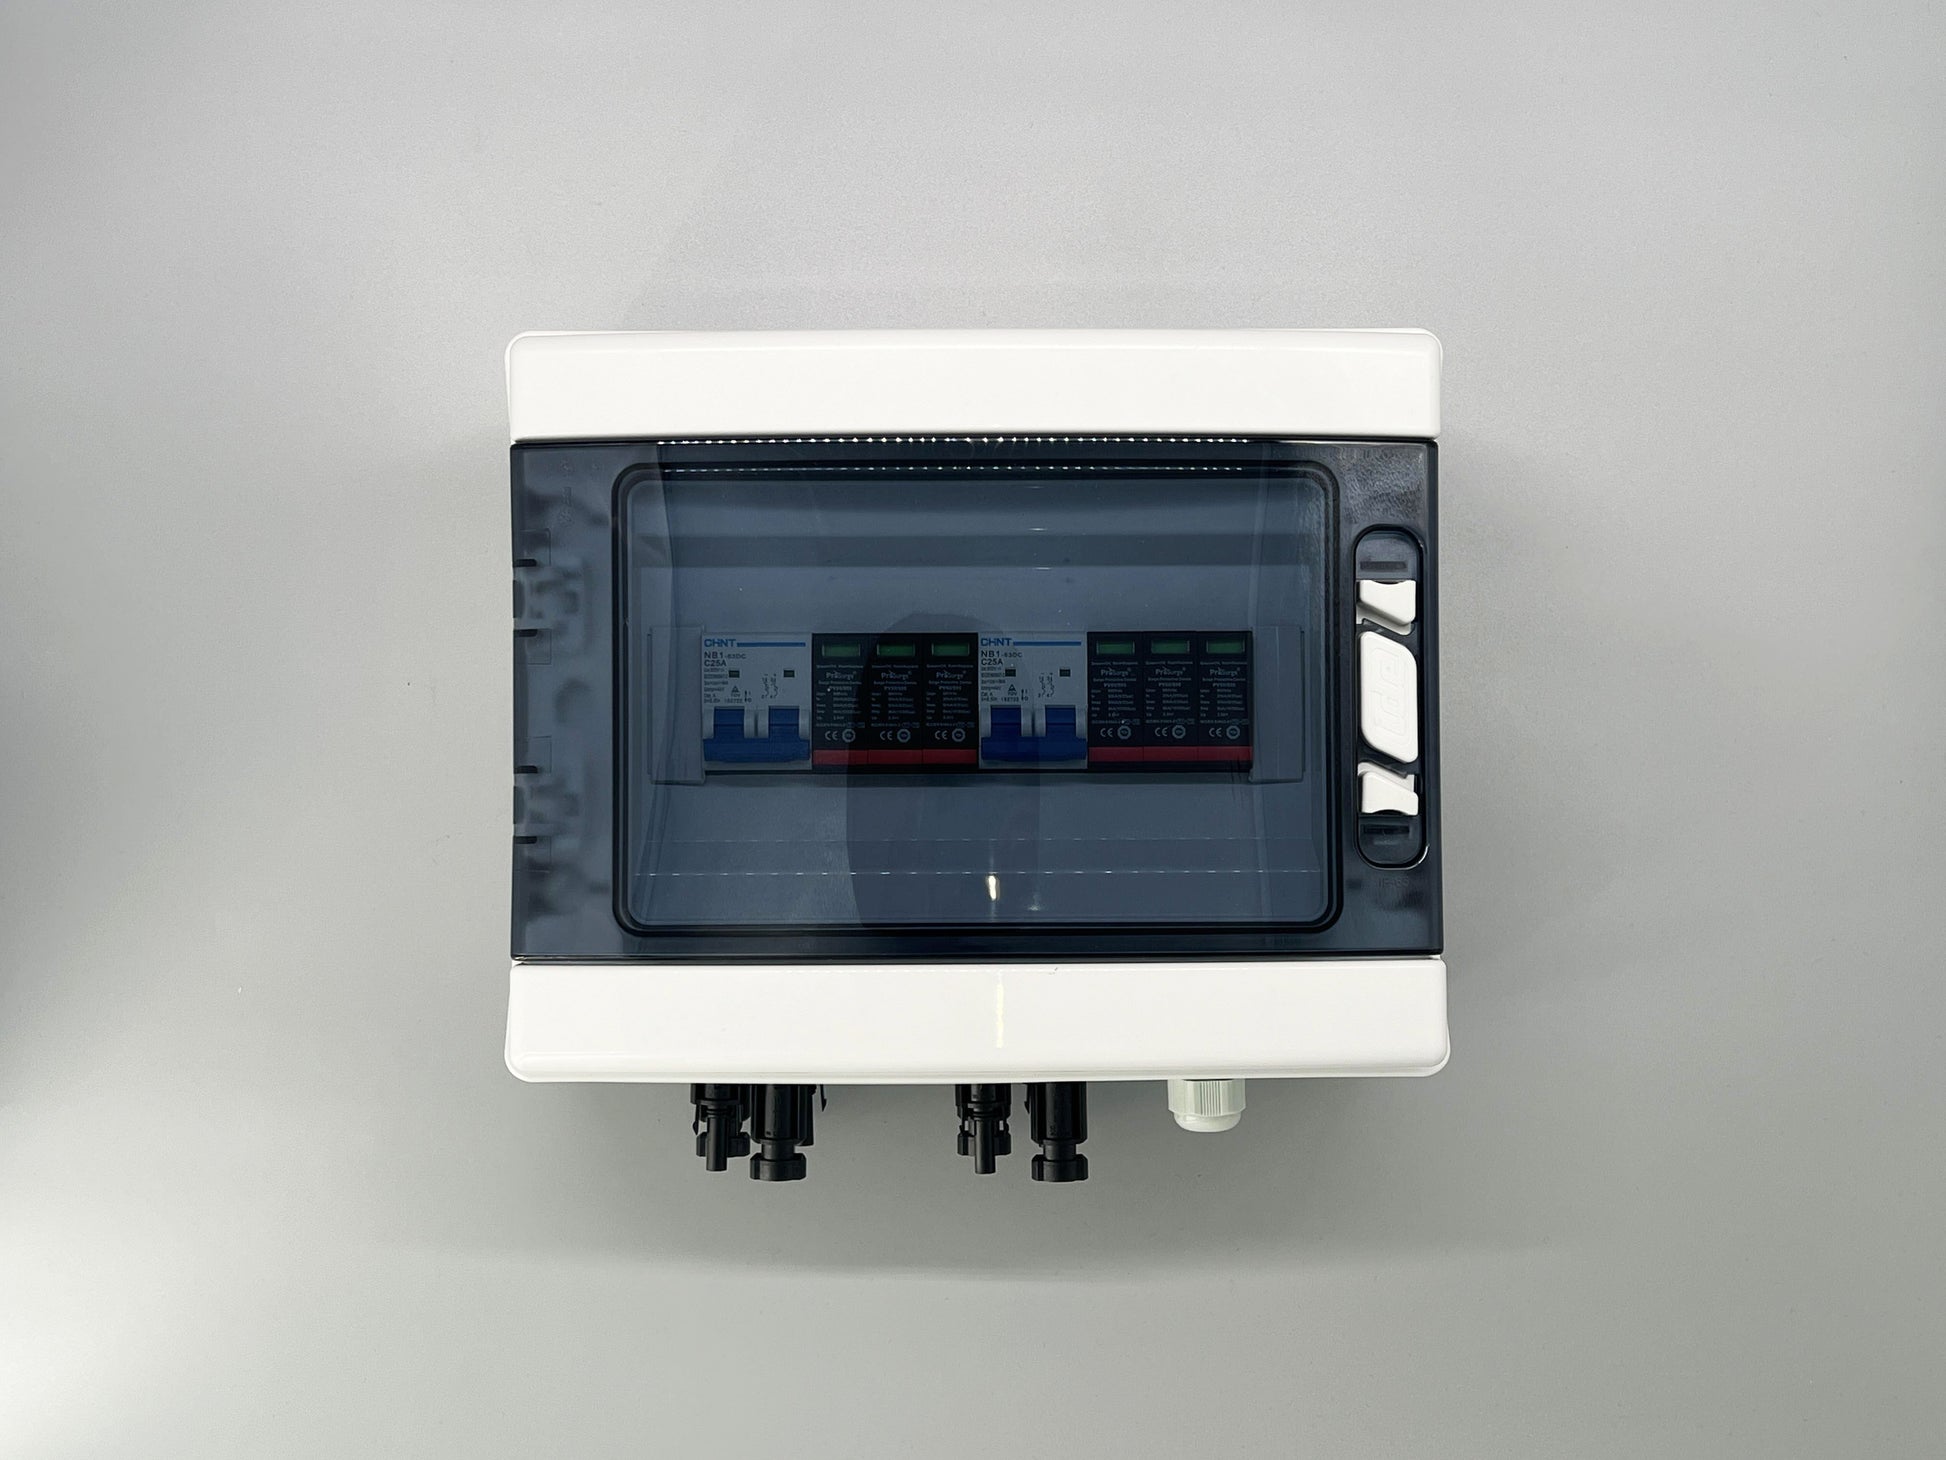 PV-DC-Generatoranschlusskasten (GAK) -CHTSB2102 – Entratek Shop